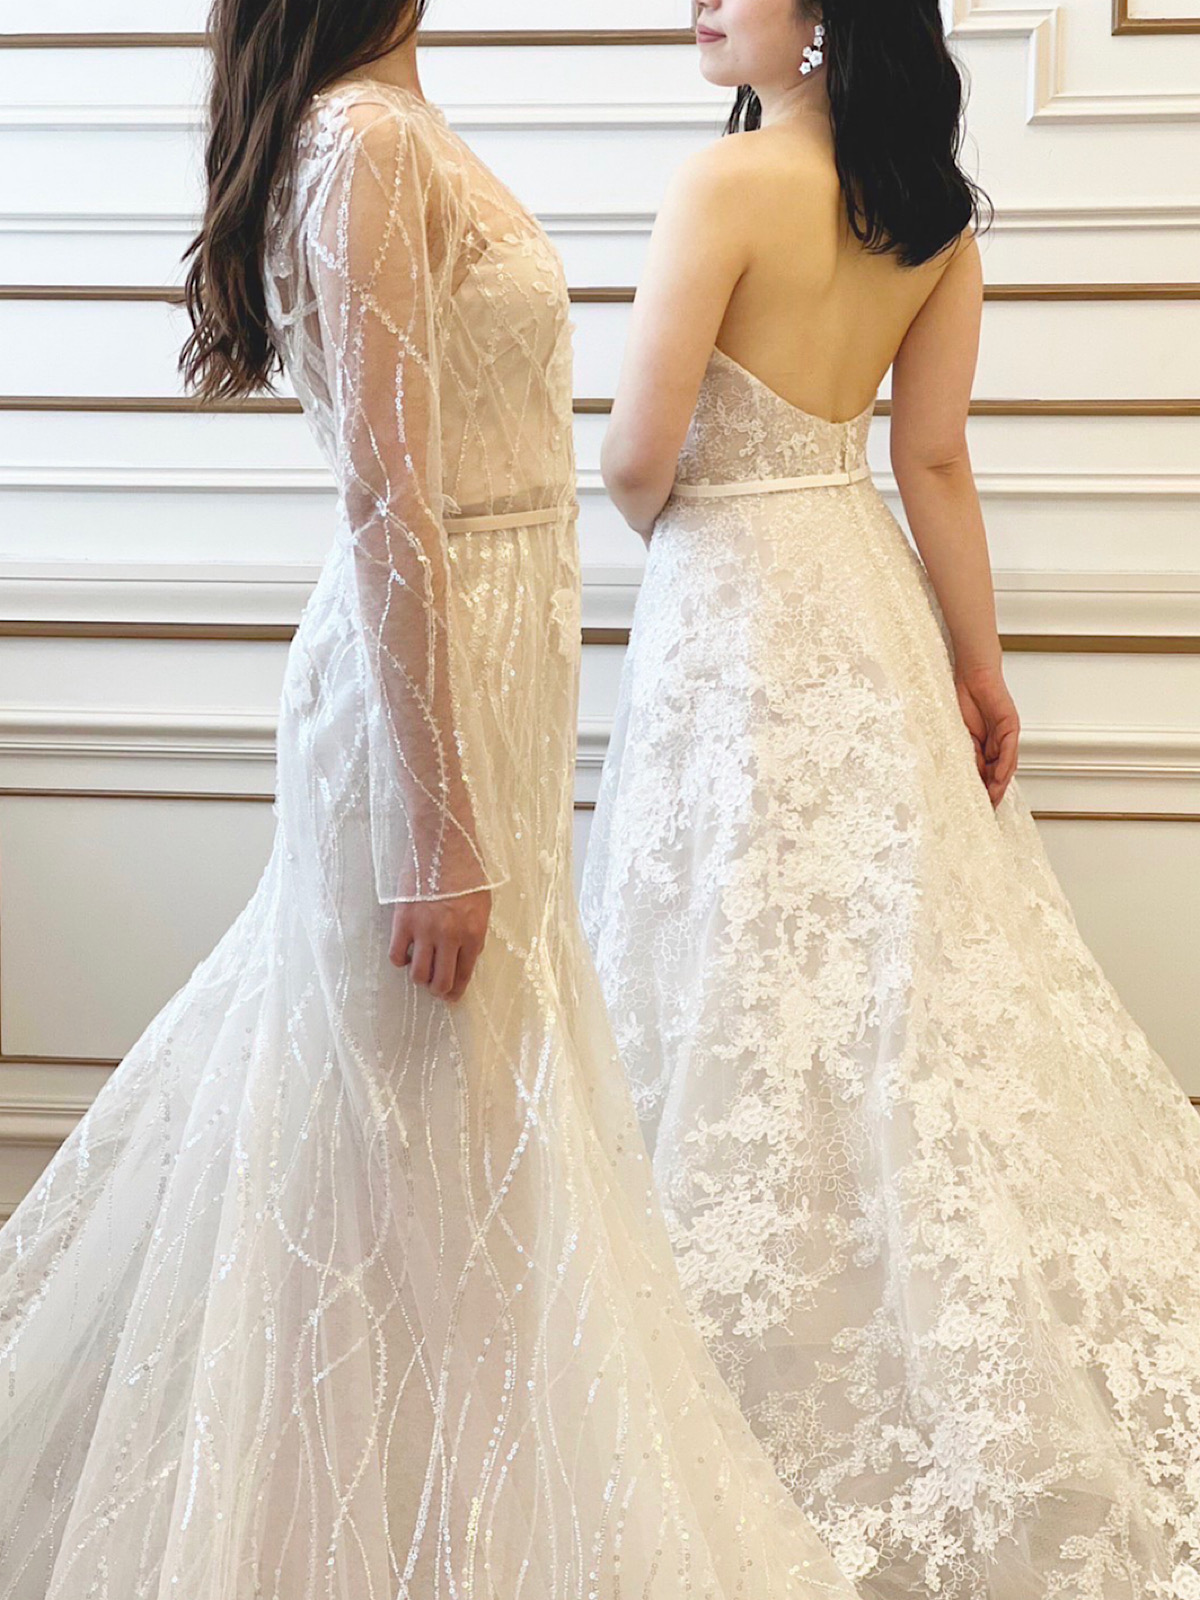 名古屋エリアの結婚式会場におすすめしたい、繊細なクチュールテクニックが特徴的なミラ ズウィリンガーのドレス